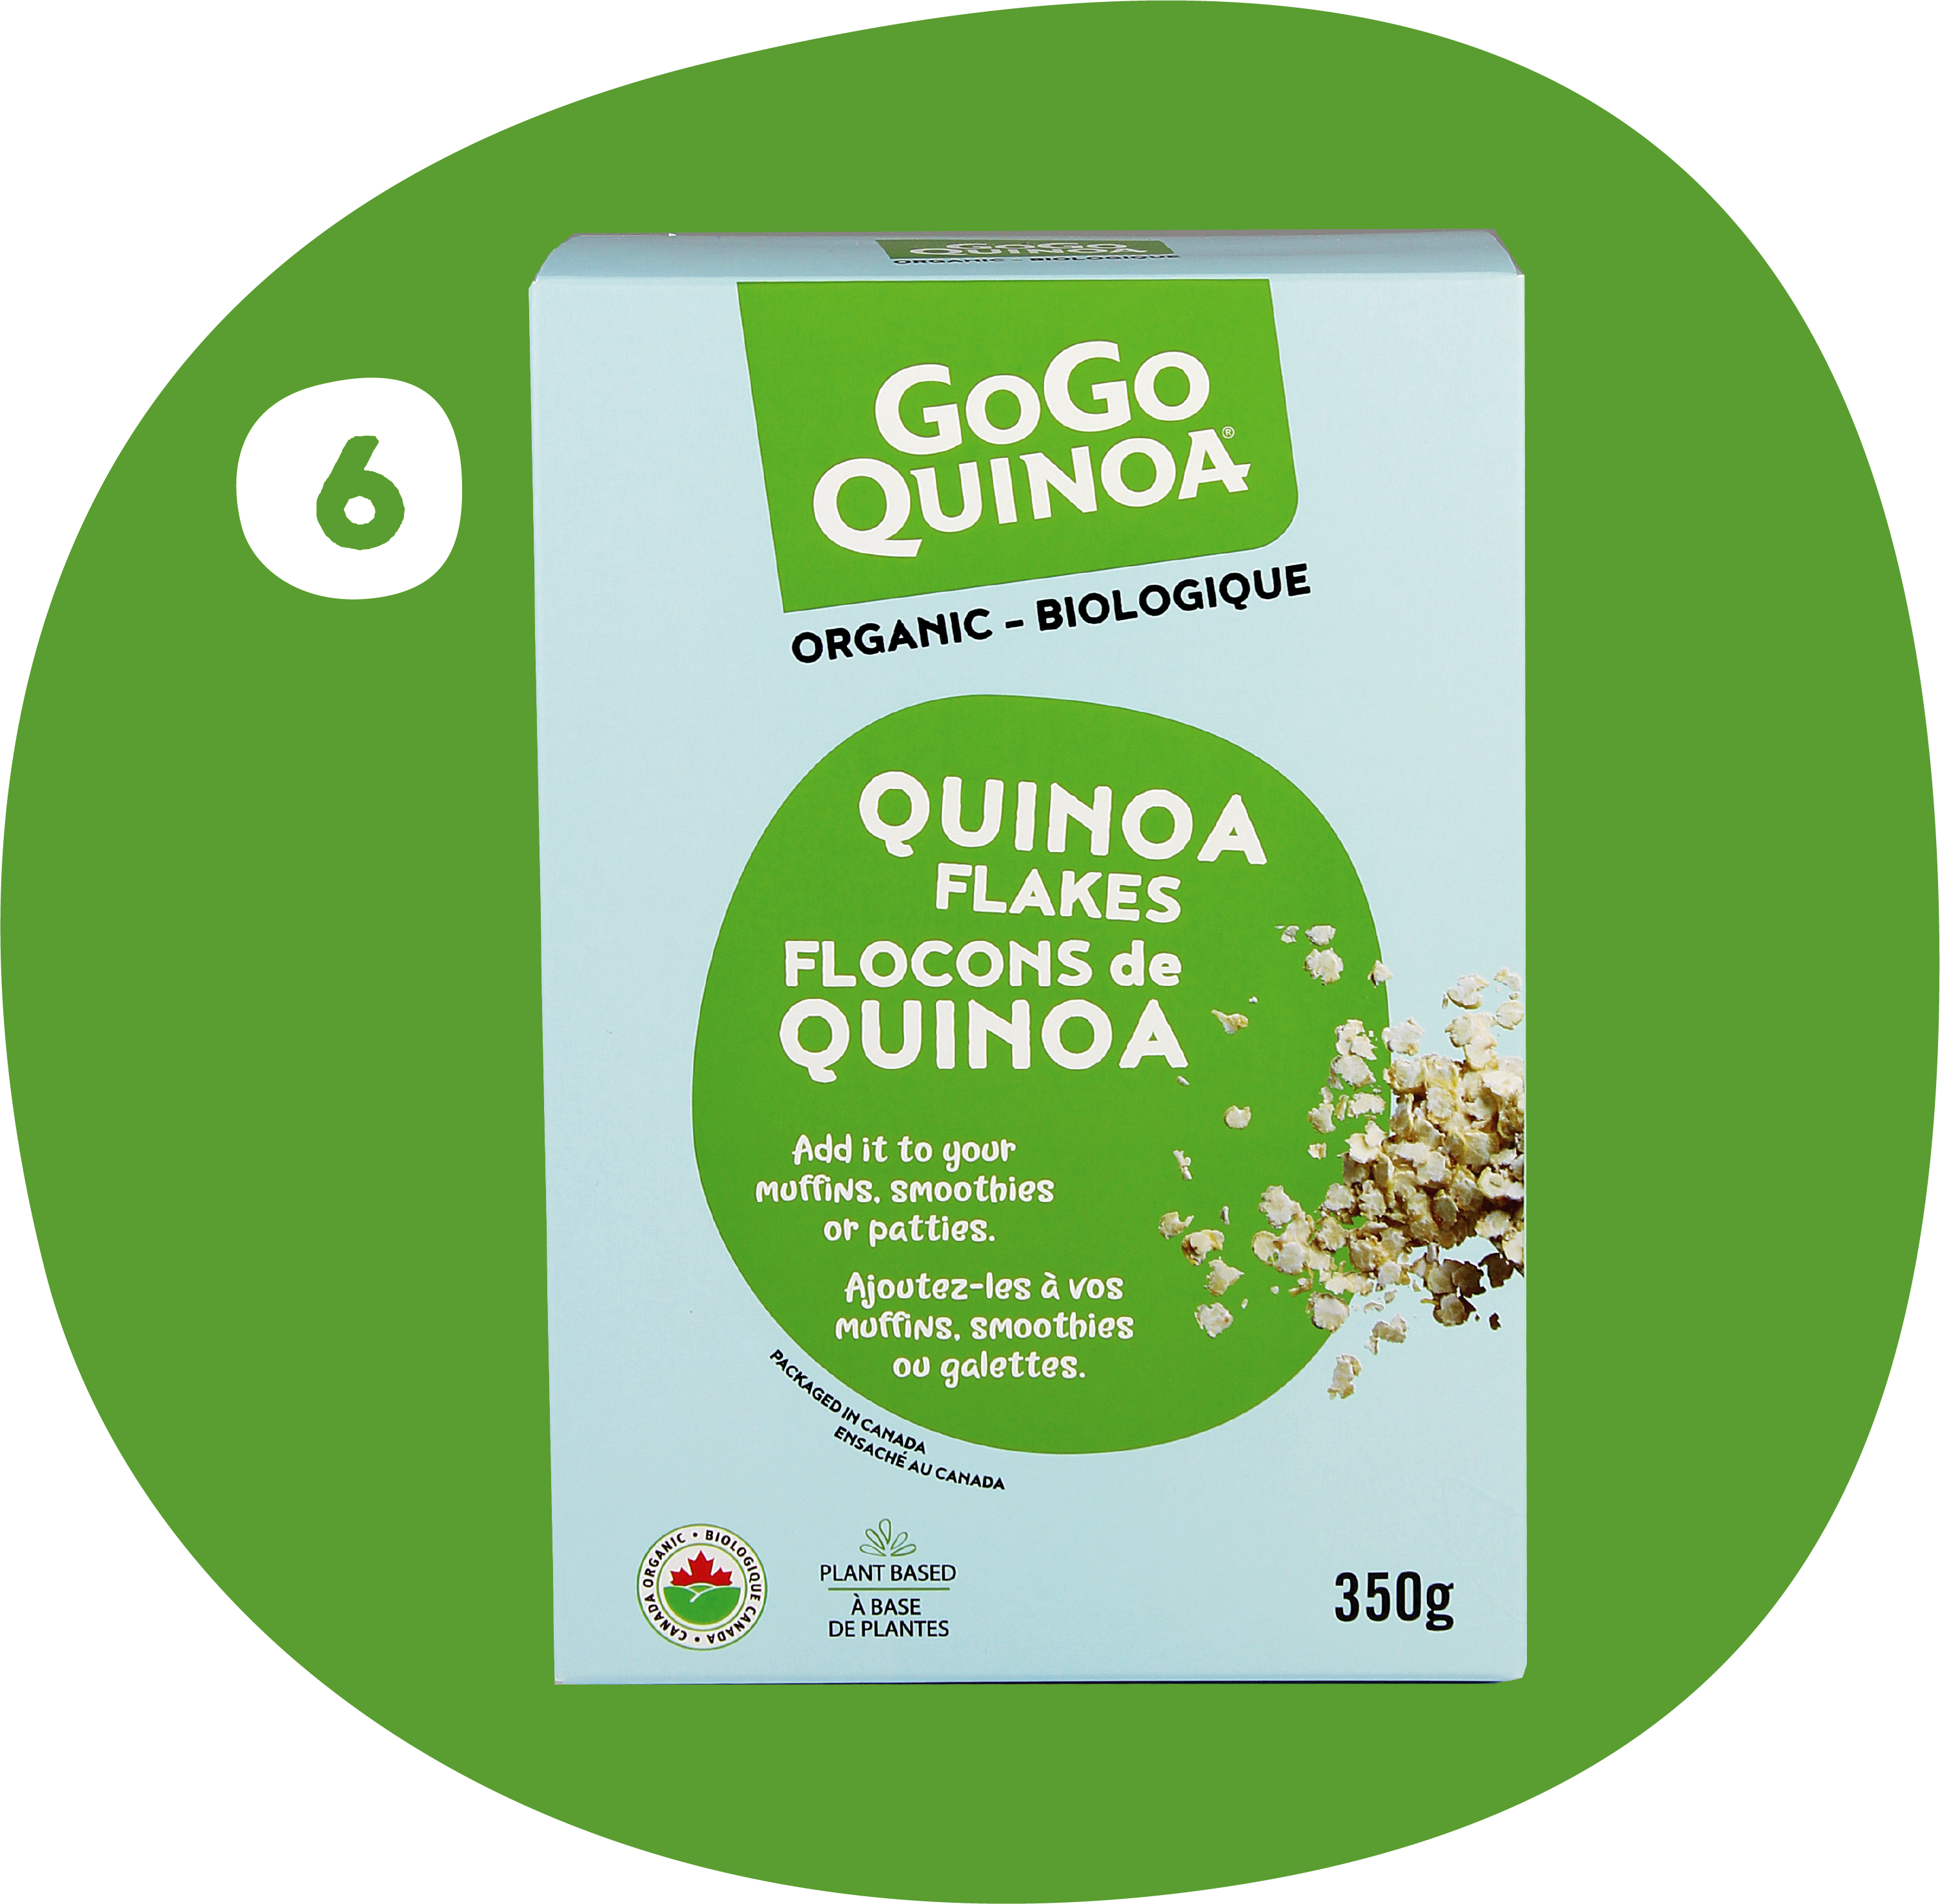 Quinoa flakes (6 boxes)